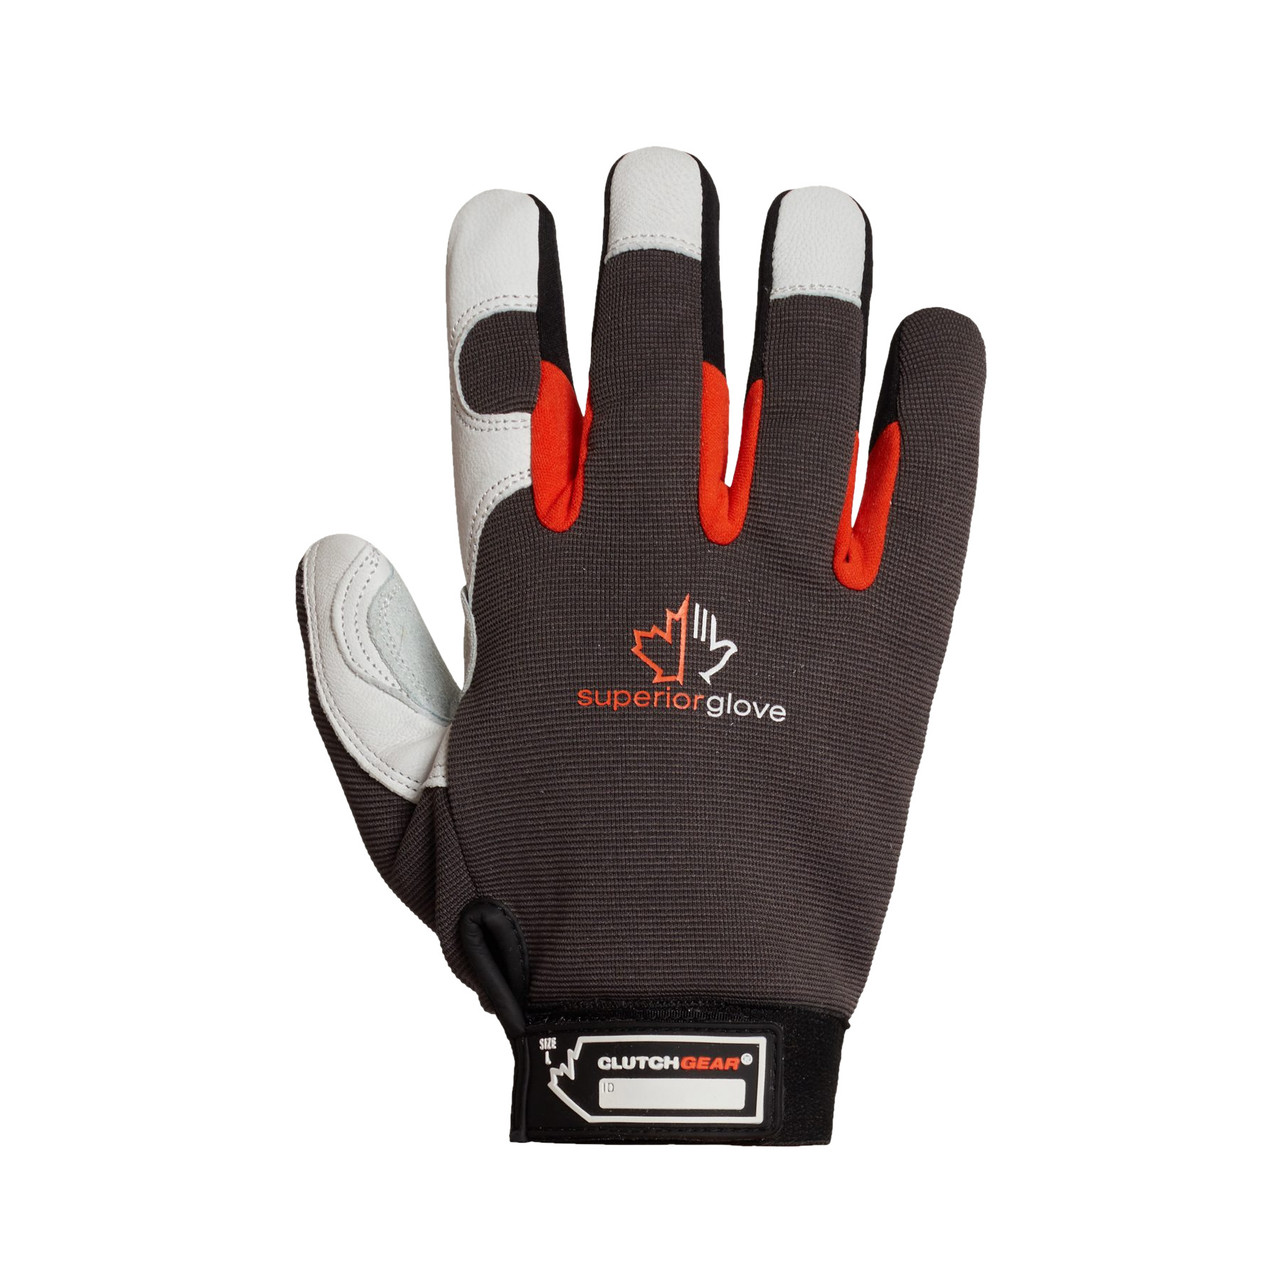 White/Black Goatskin Mechanics Work Gloves